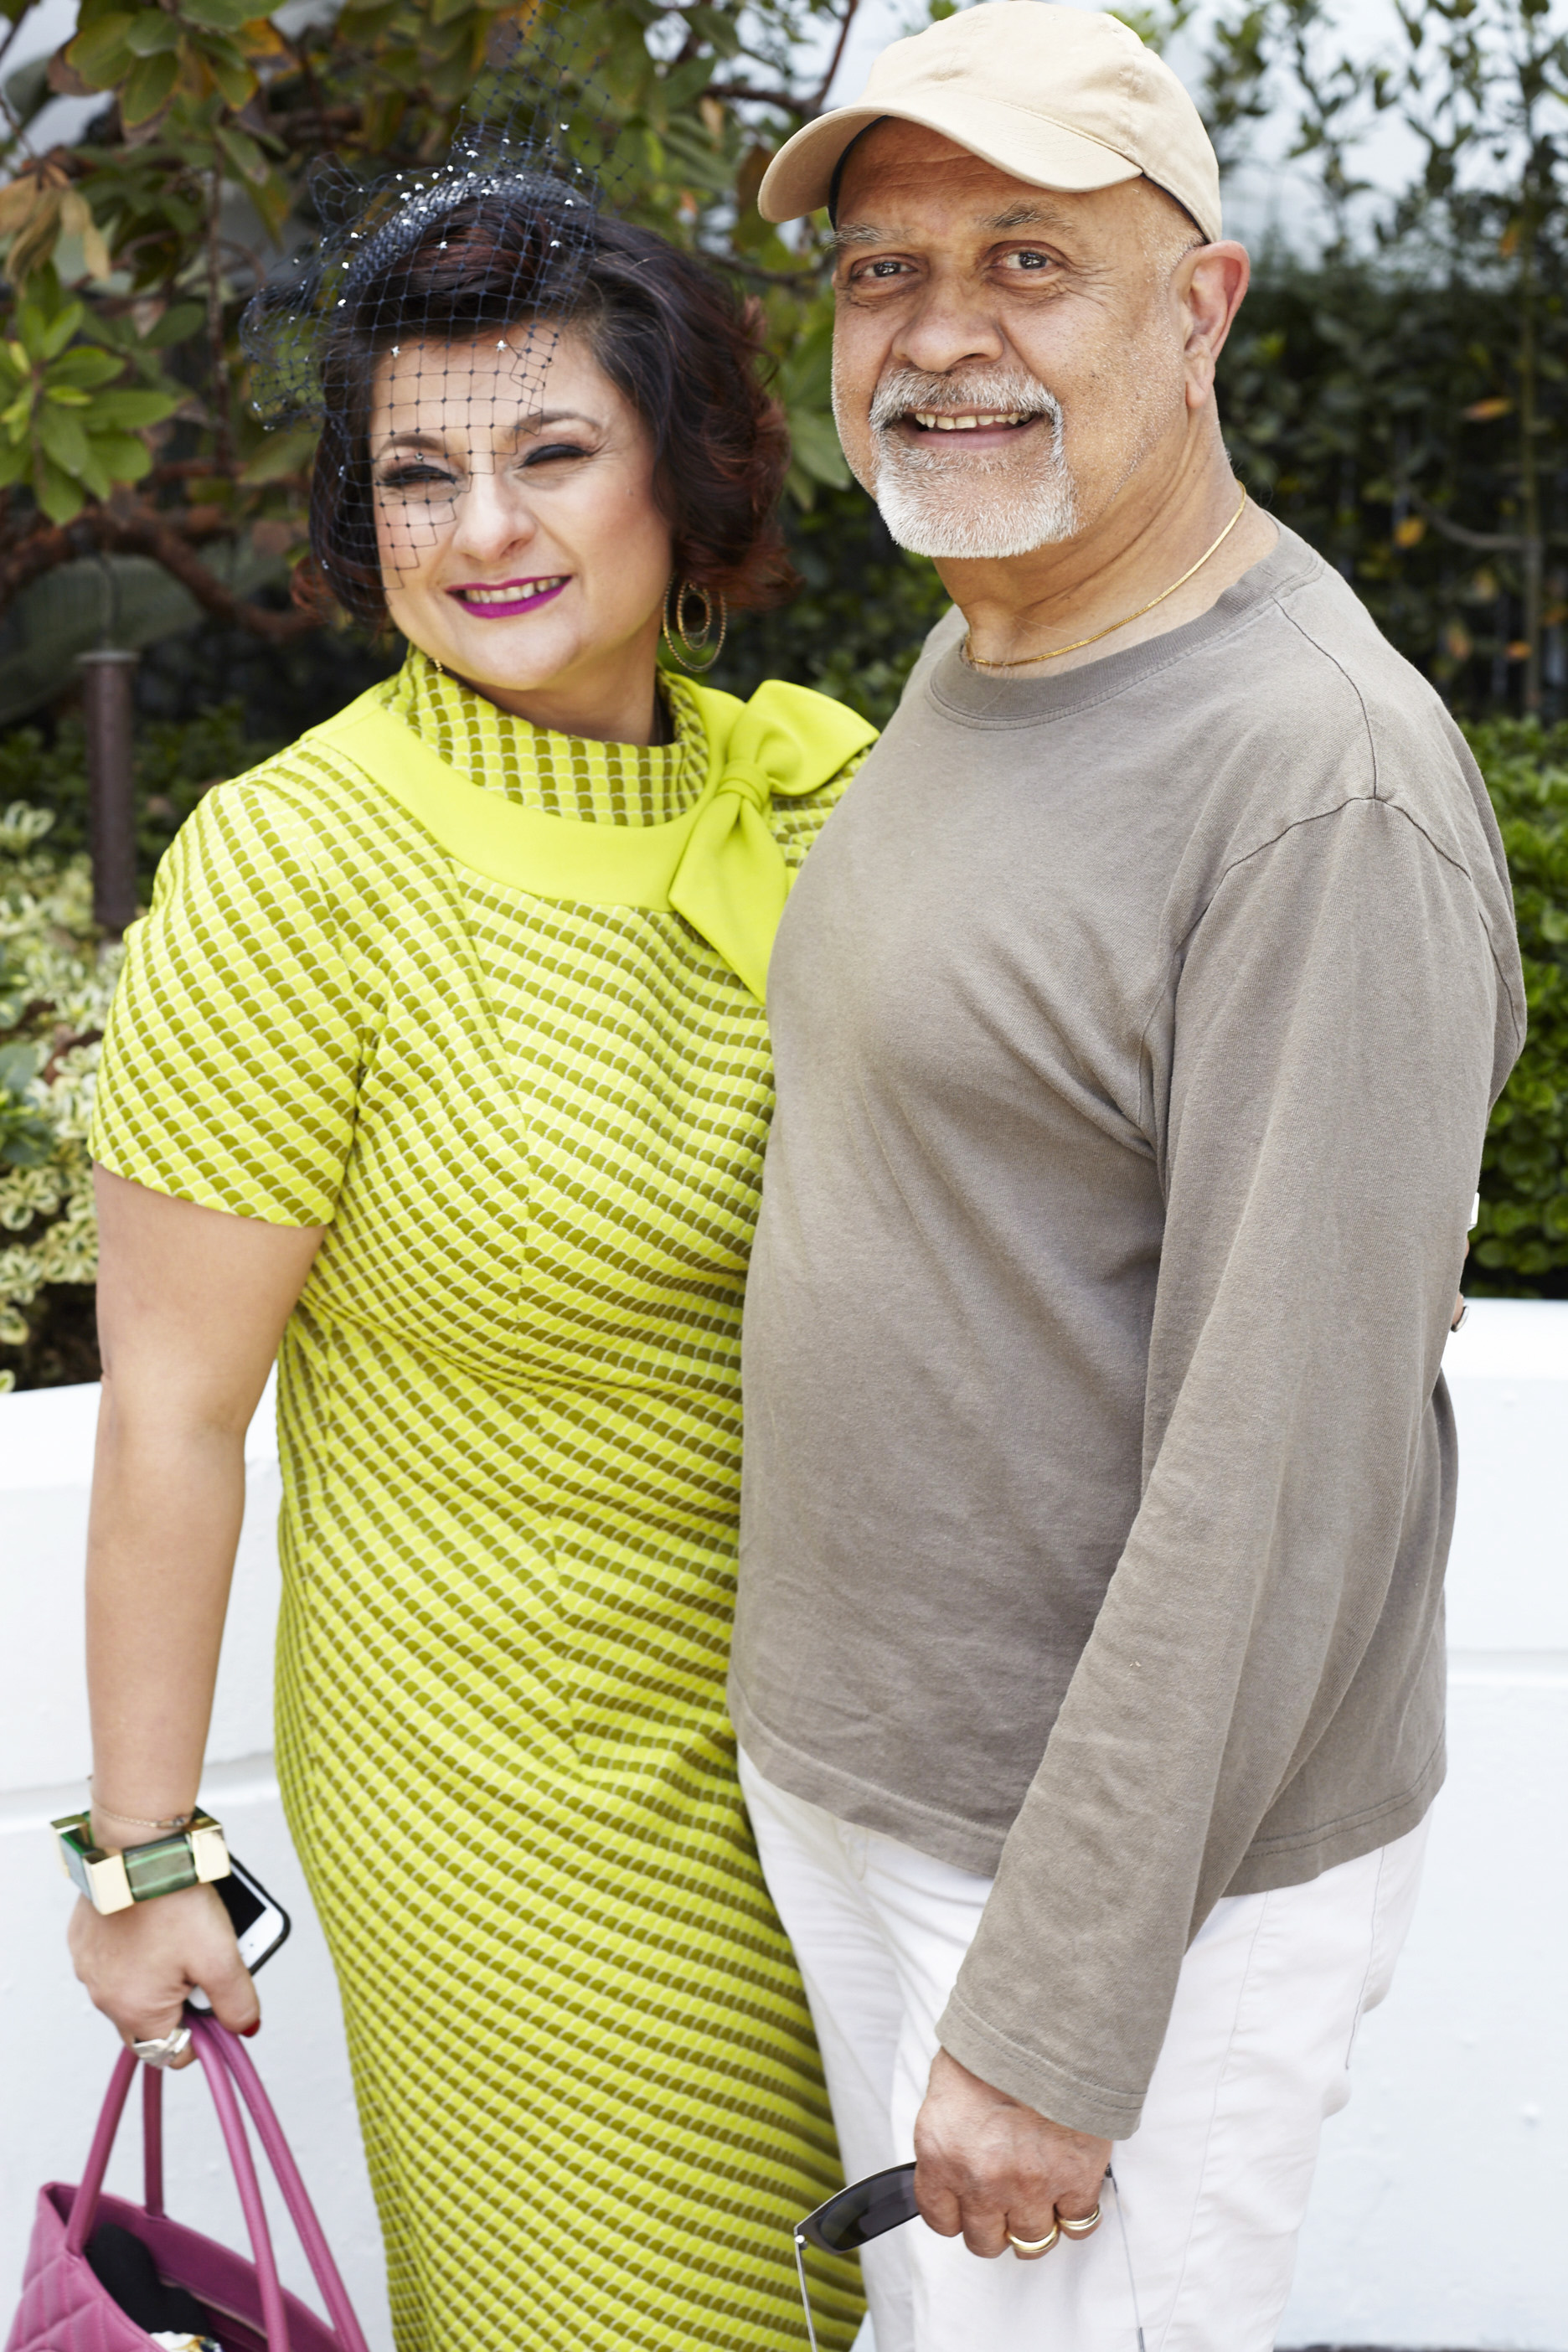 Tamie Adaya and Waris Habibullah, creator of Dr. Who